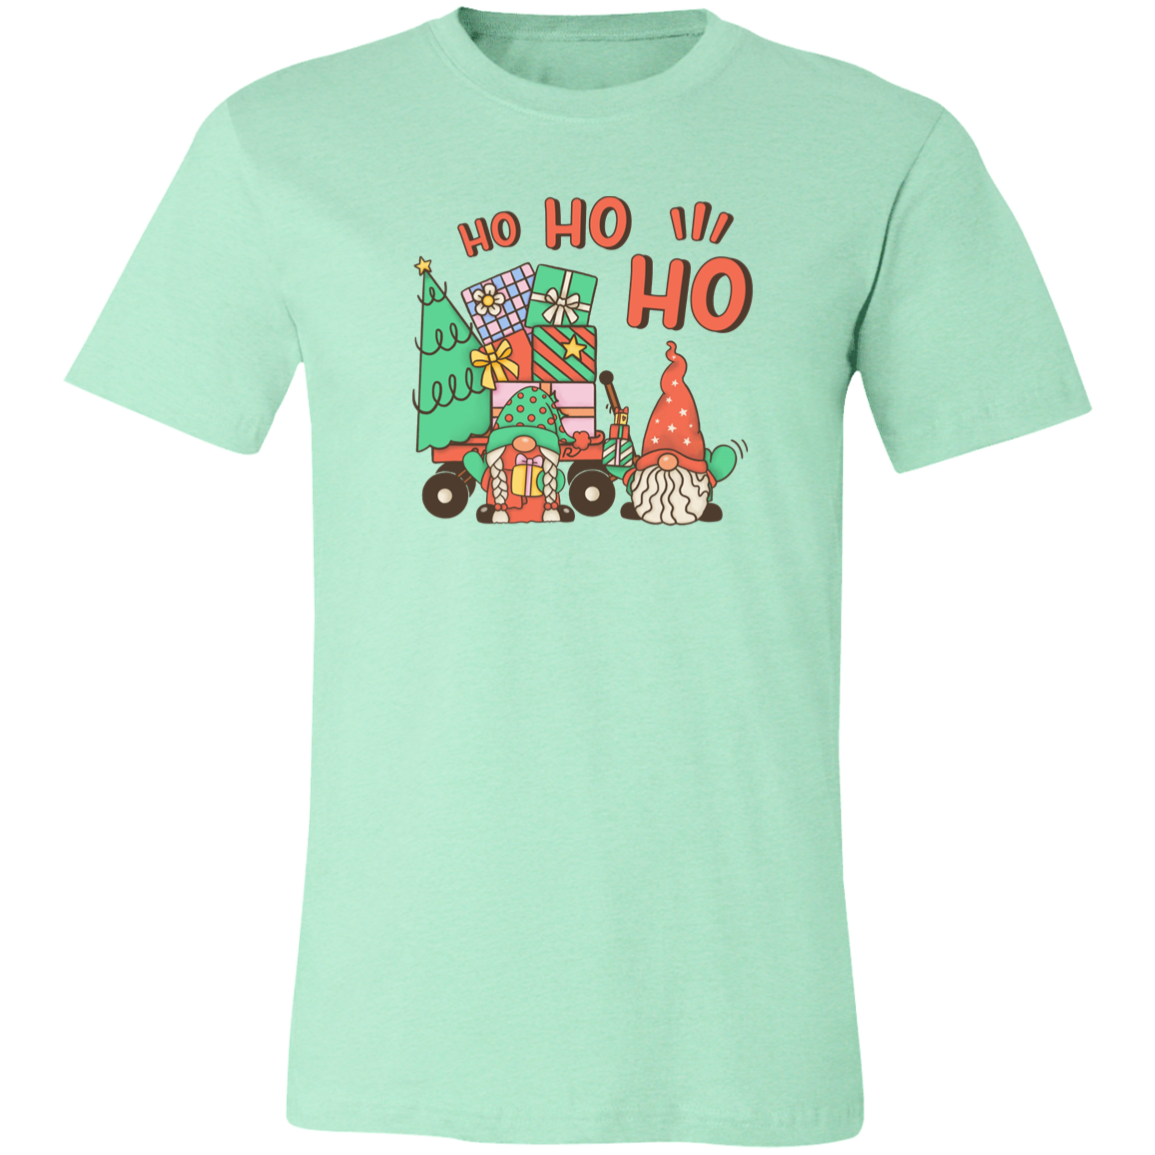 Ho Ho Ho Gnome Shirt